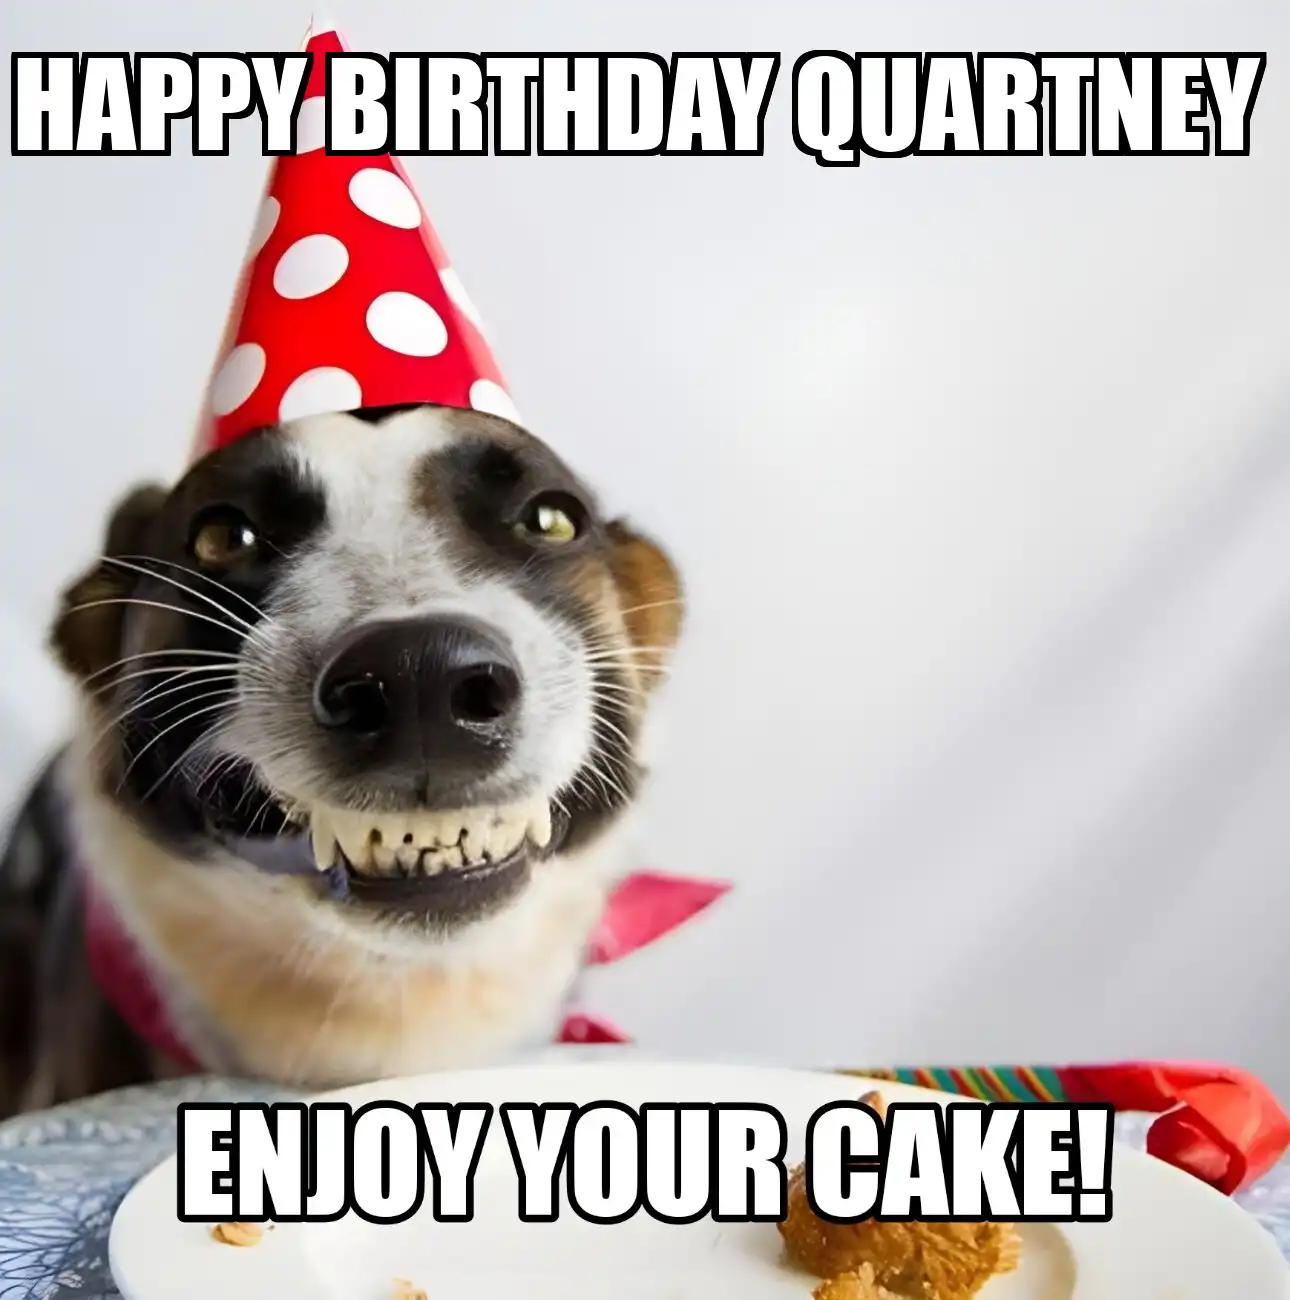 Happy Birthday Quartney Enjoy Your Cake Dog Meme